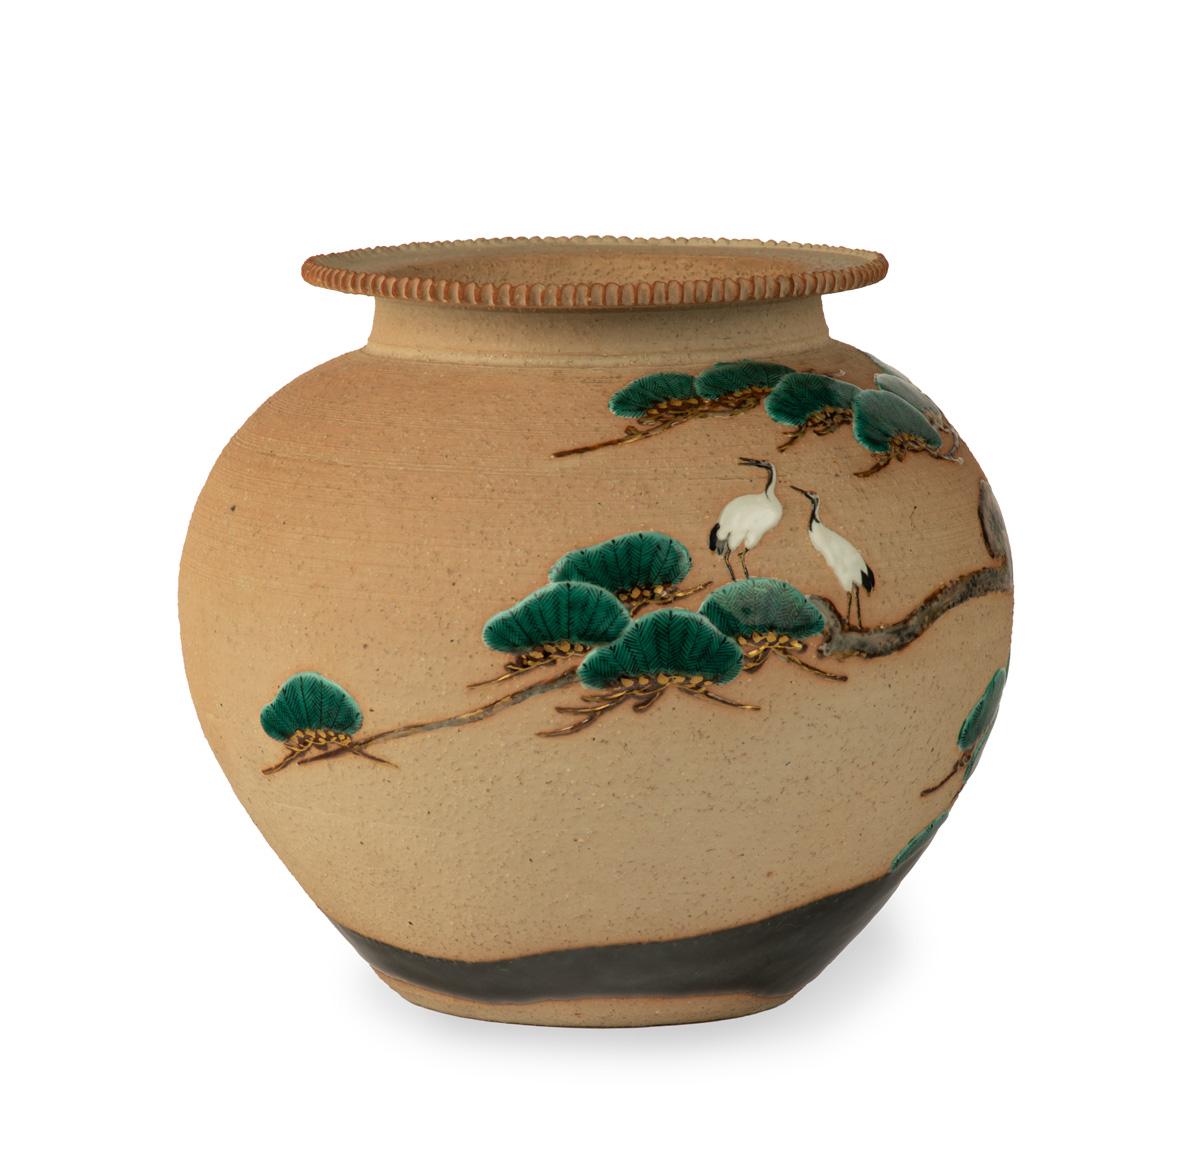 Als Teil unserer Sammlung japanischer Kunstwerke freuen wir uns, dieses faszinierende kugelförmige Steinzeuggefäß aus der späten Meiji-Periode (1868-1912) und der frühen Taisho-Periode (1912-1926) anbieten zu können. Es stammt aus den hoch